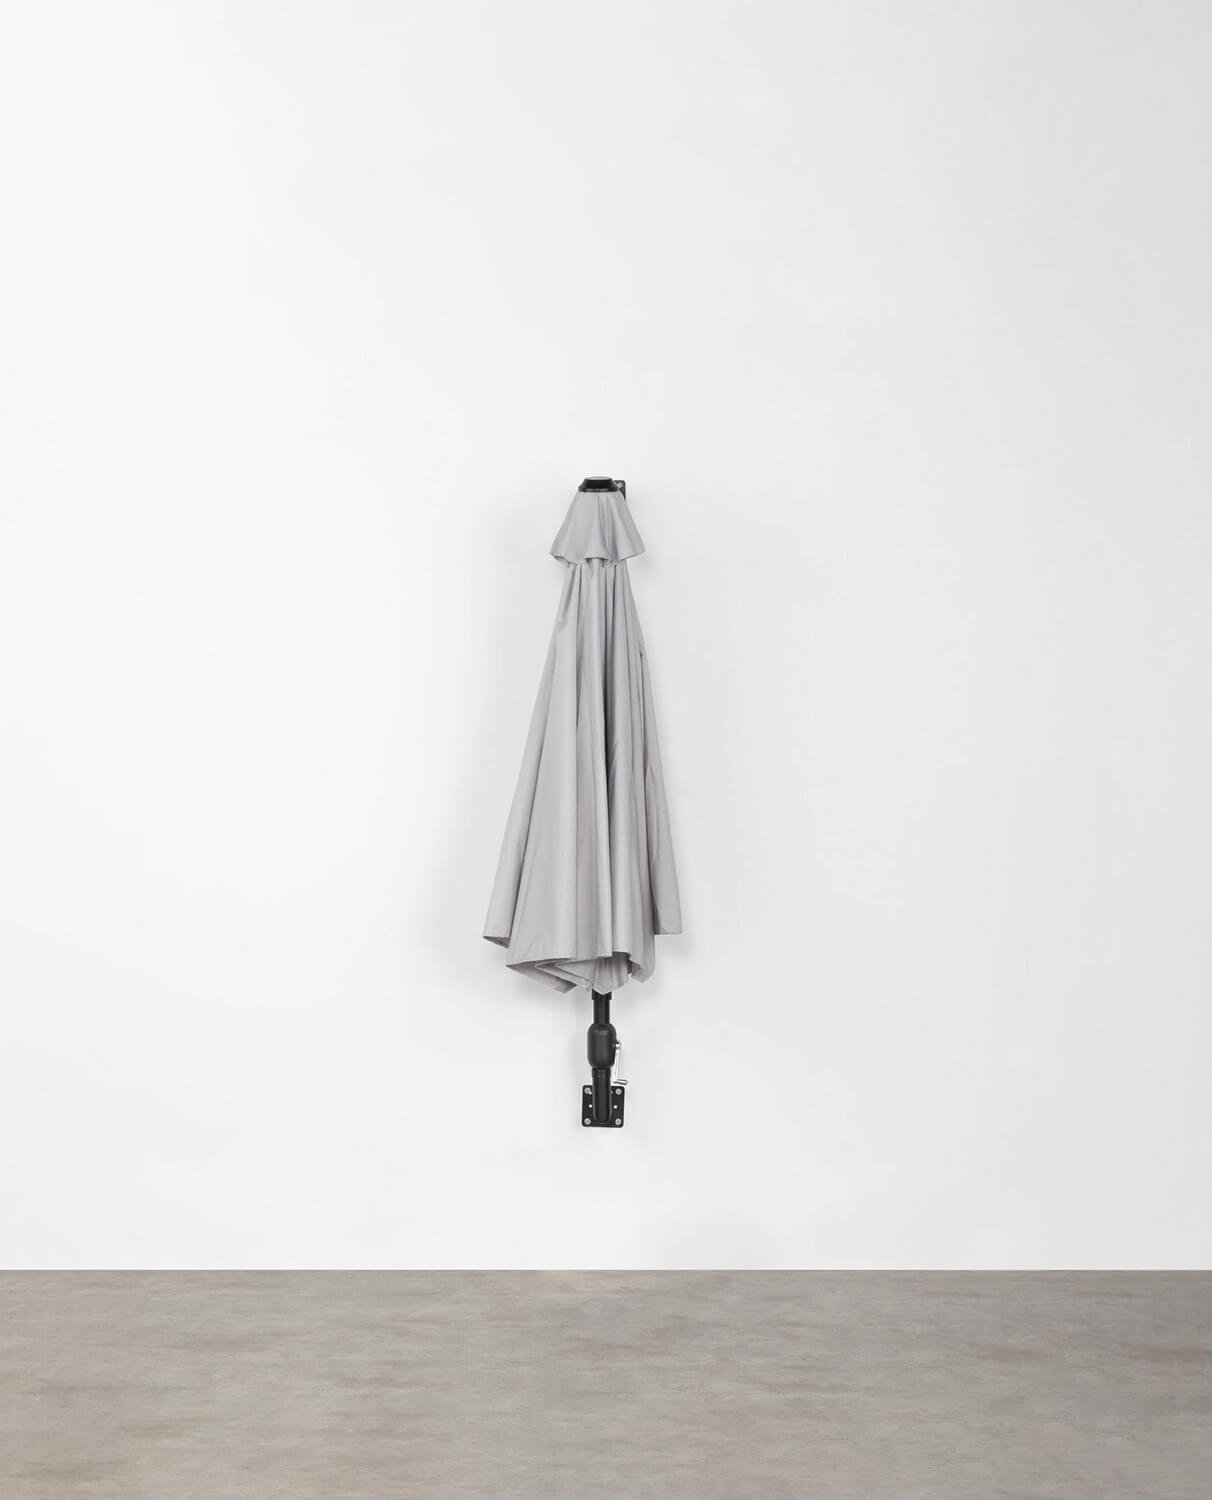 Ombrellone da Parete per Giardino e Terrazza (266x276 cm) Irom, immagine della galleria 2